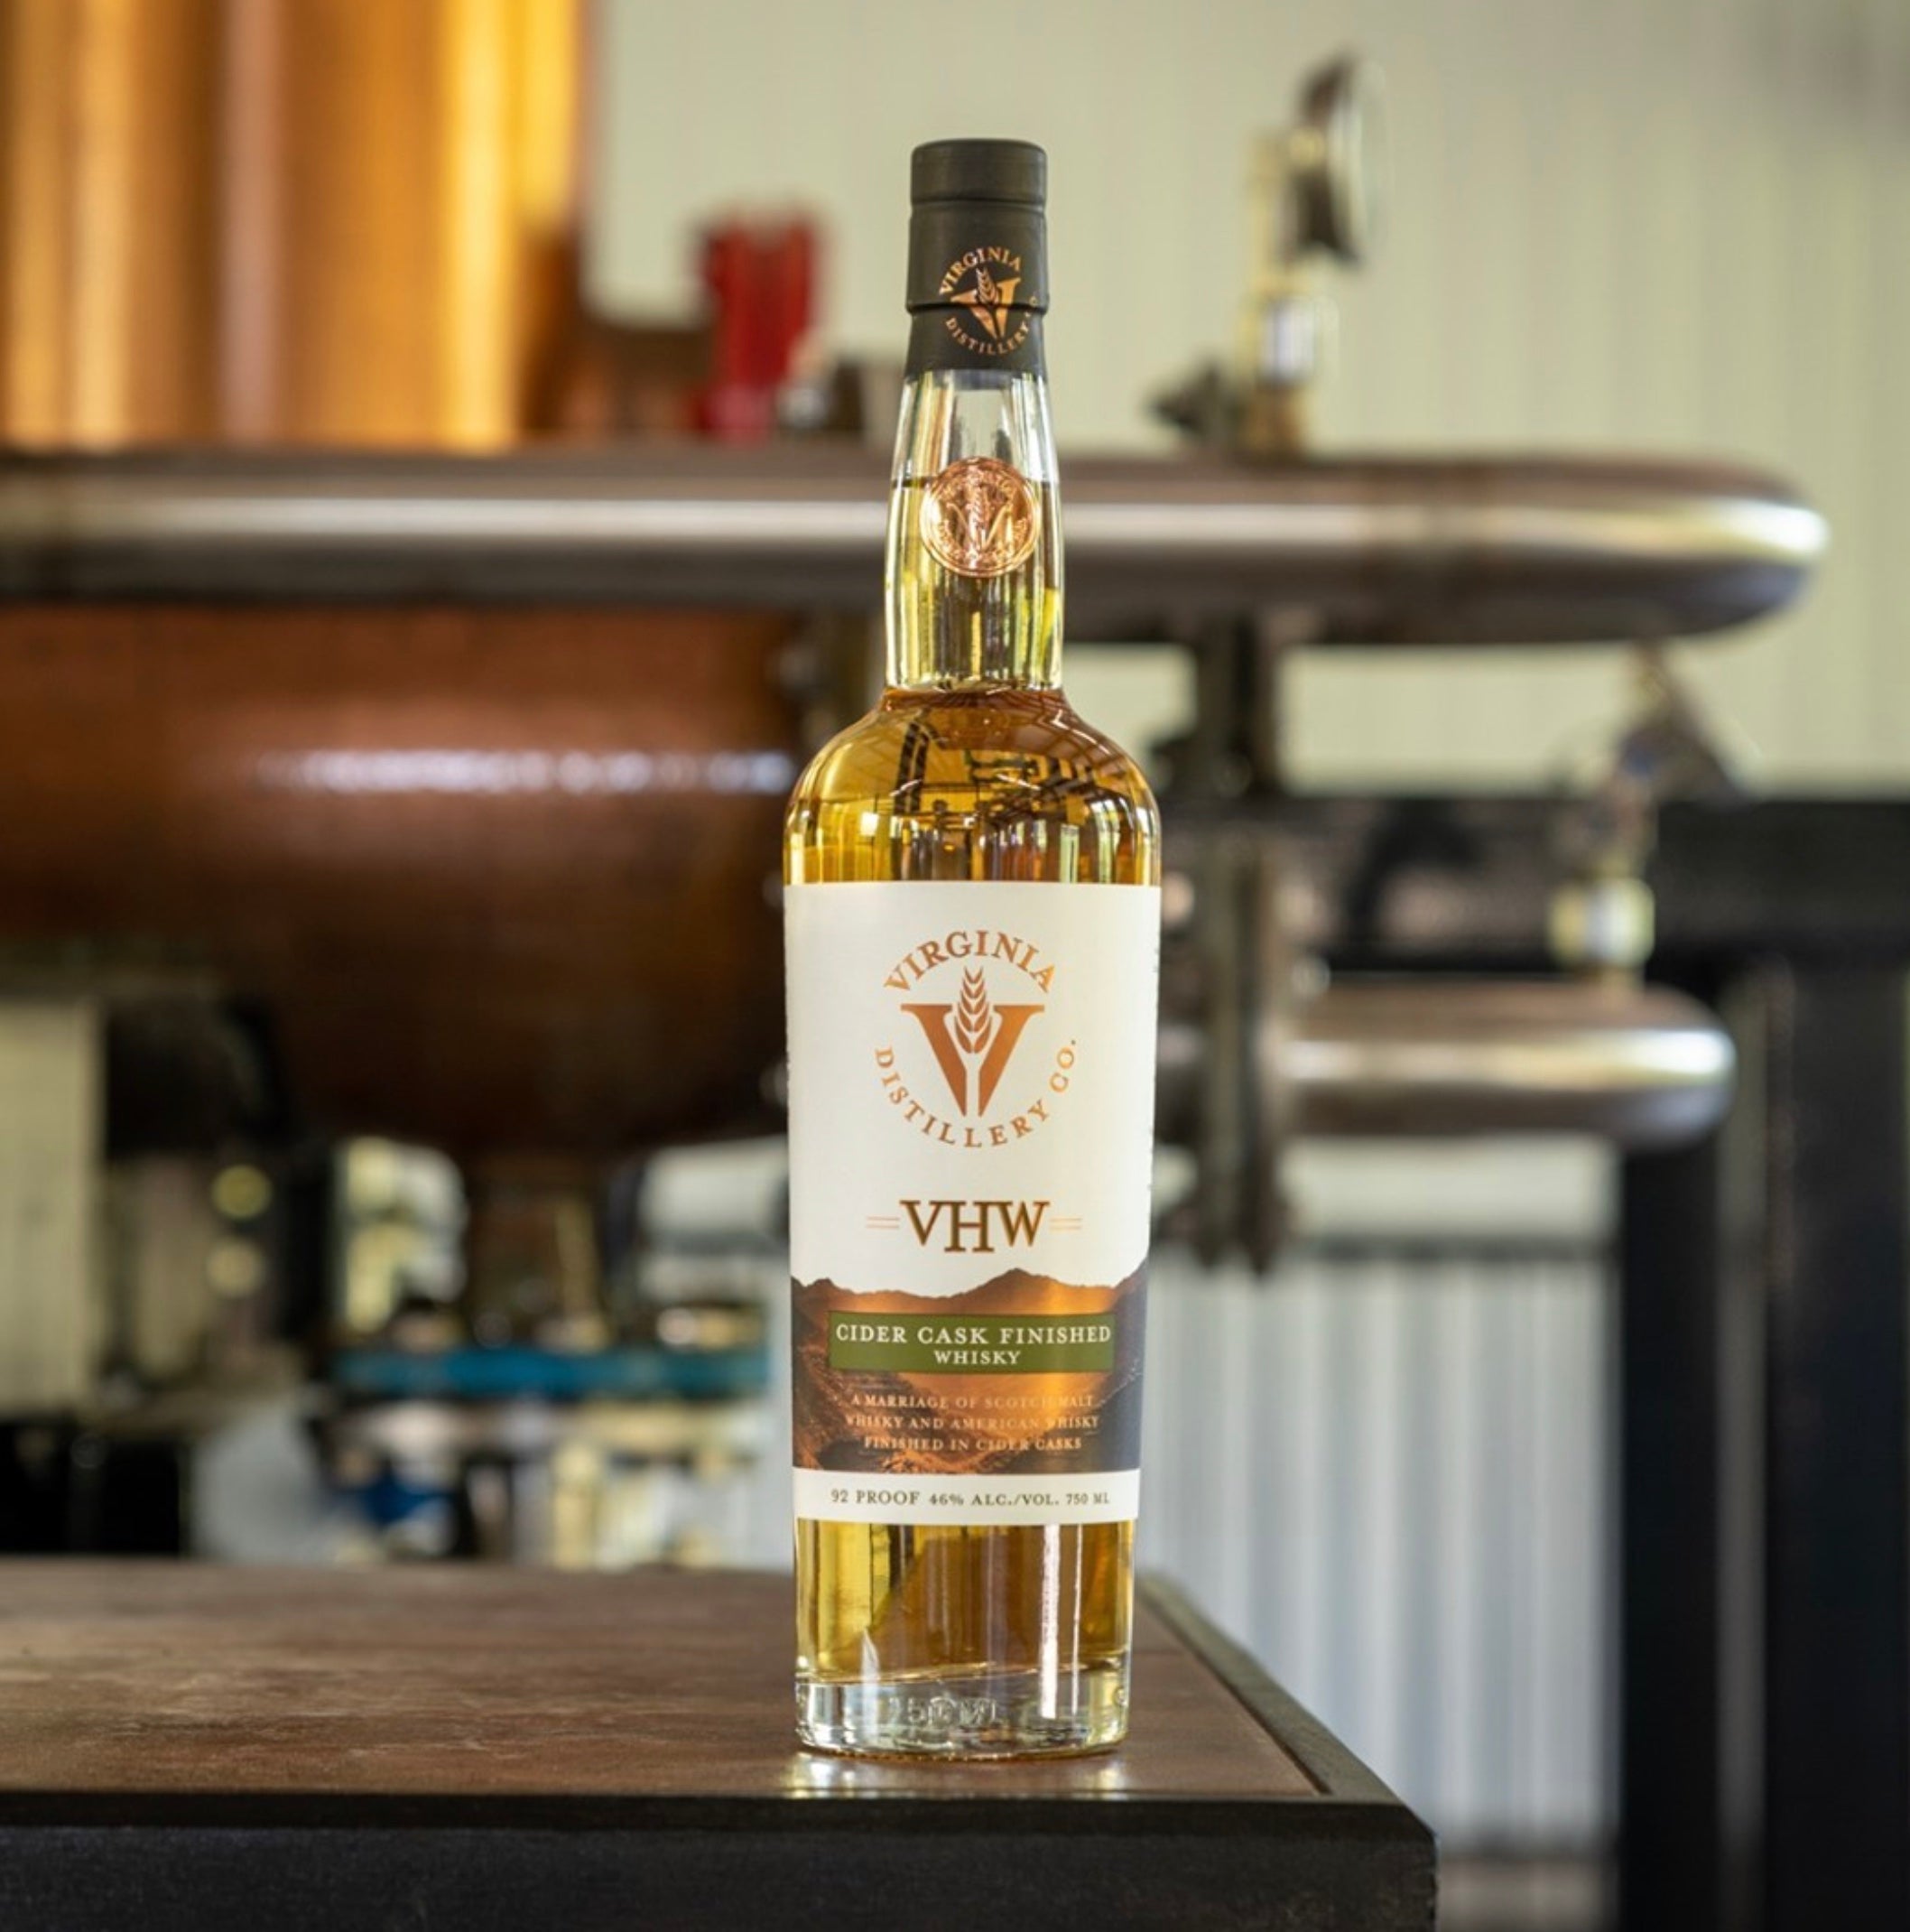 Virginia Distillery Co. VHW Cider Cask Finished Whisky